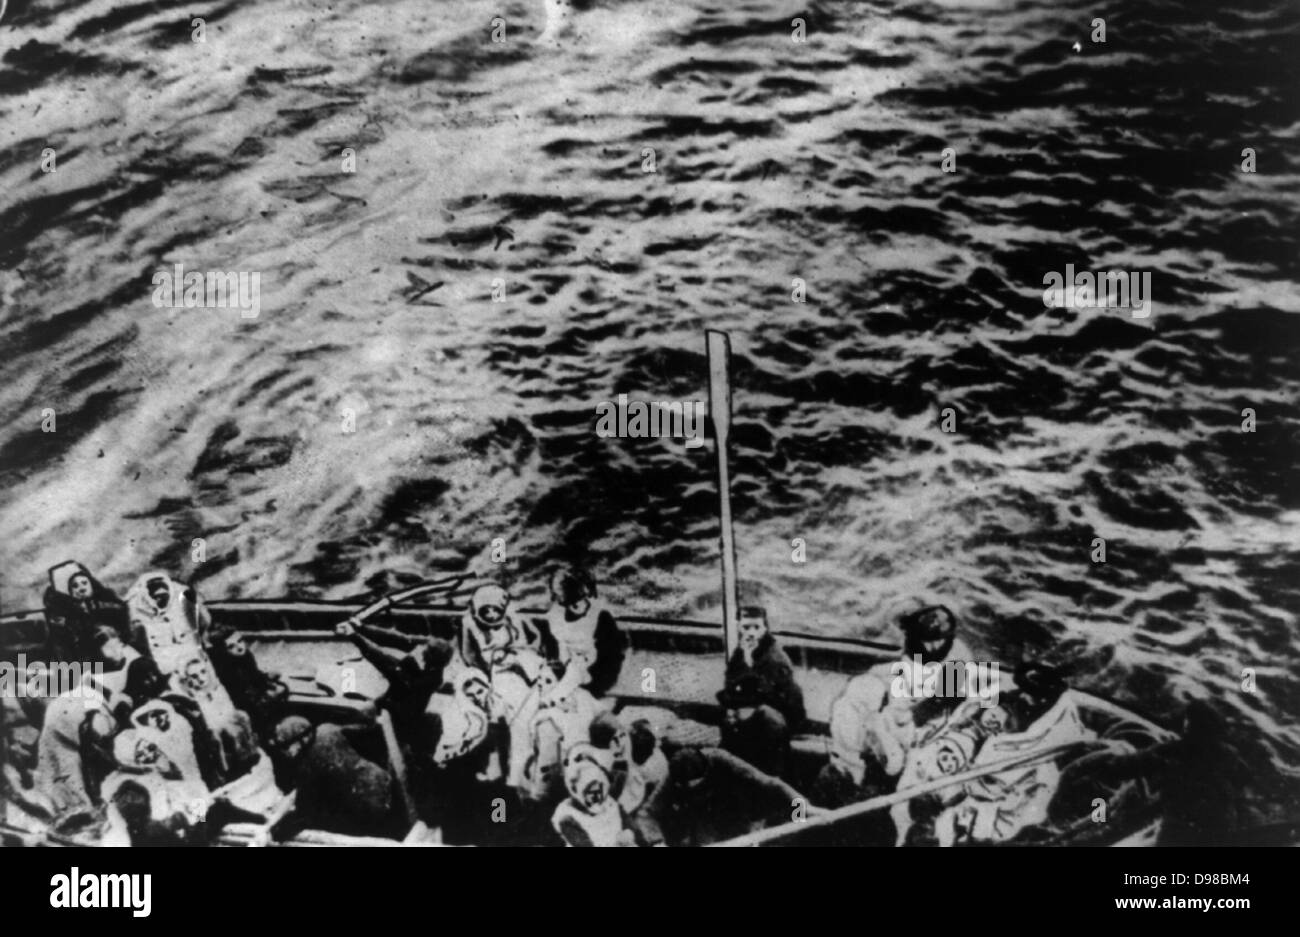 L'Italia lancia la discesa sul Titanic (per tutti) - La Stampa